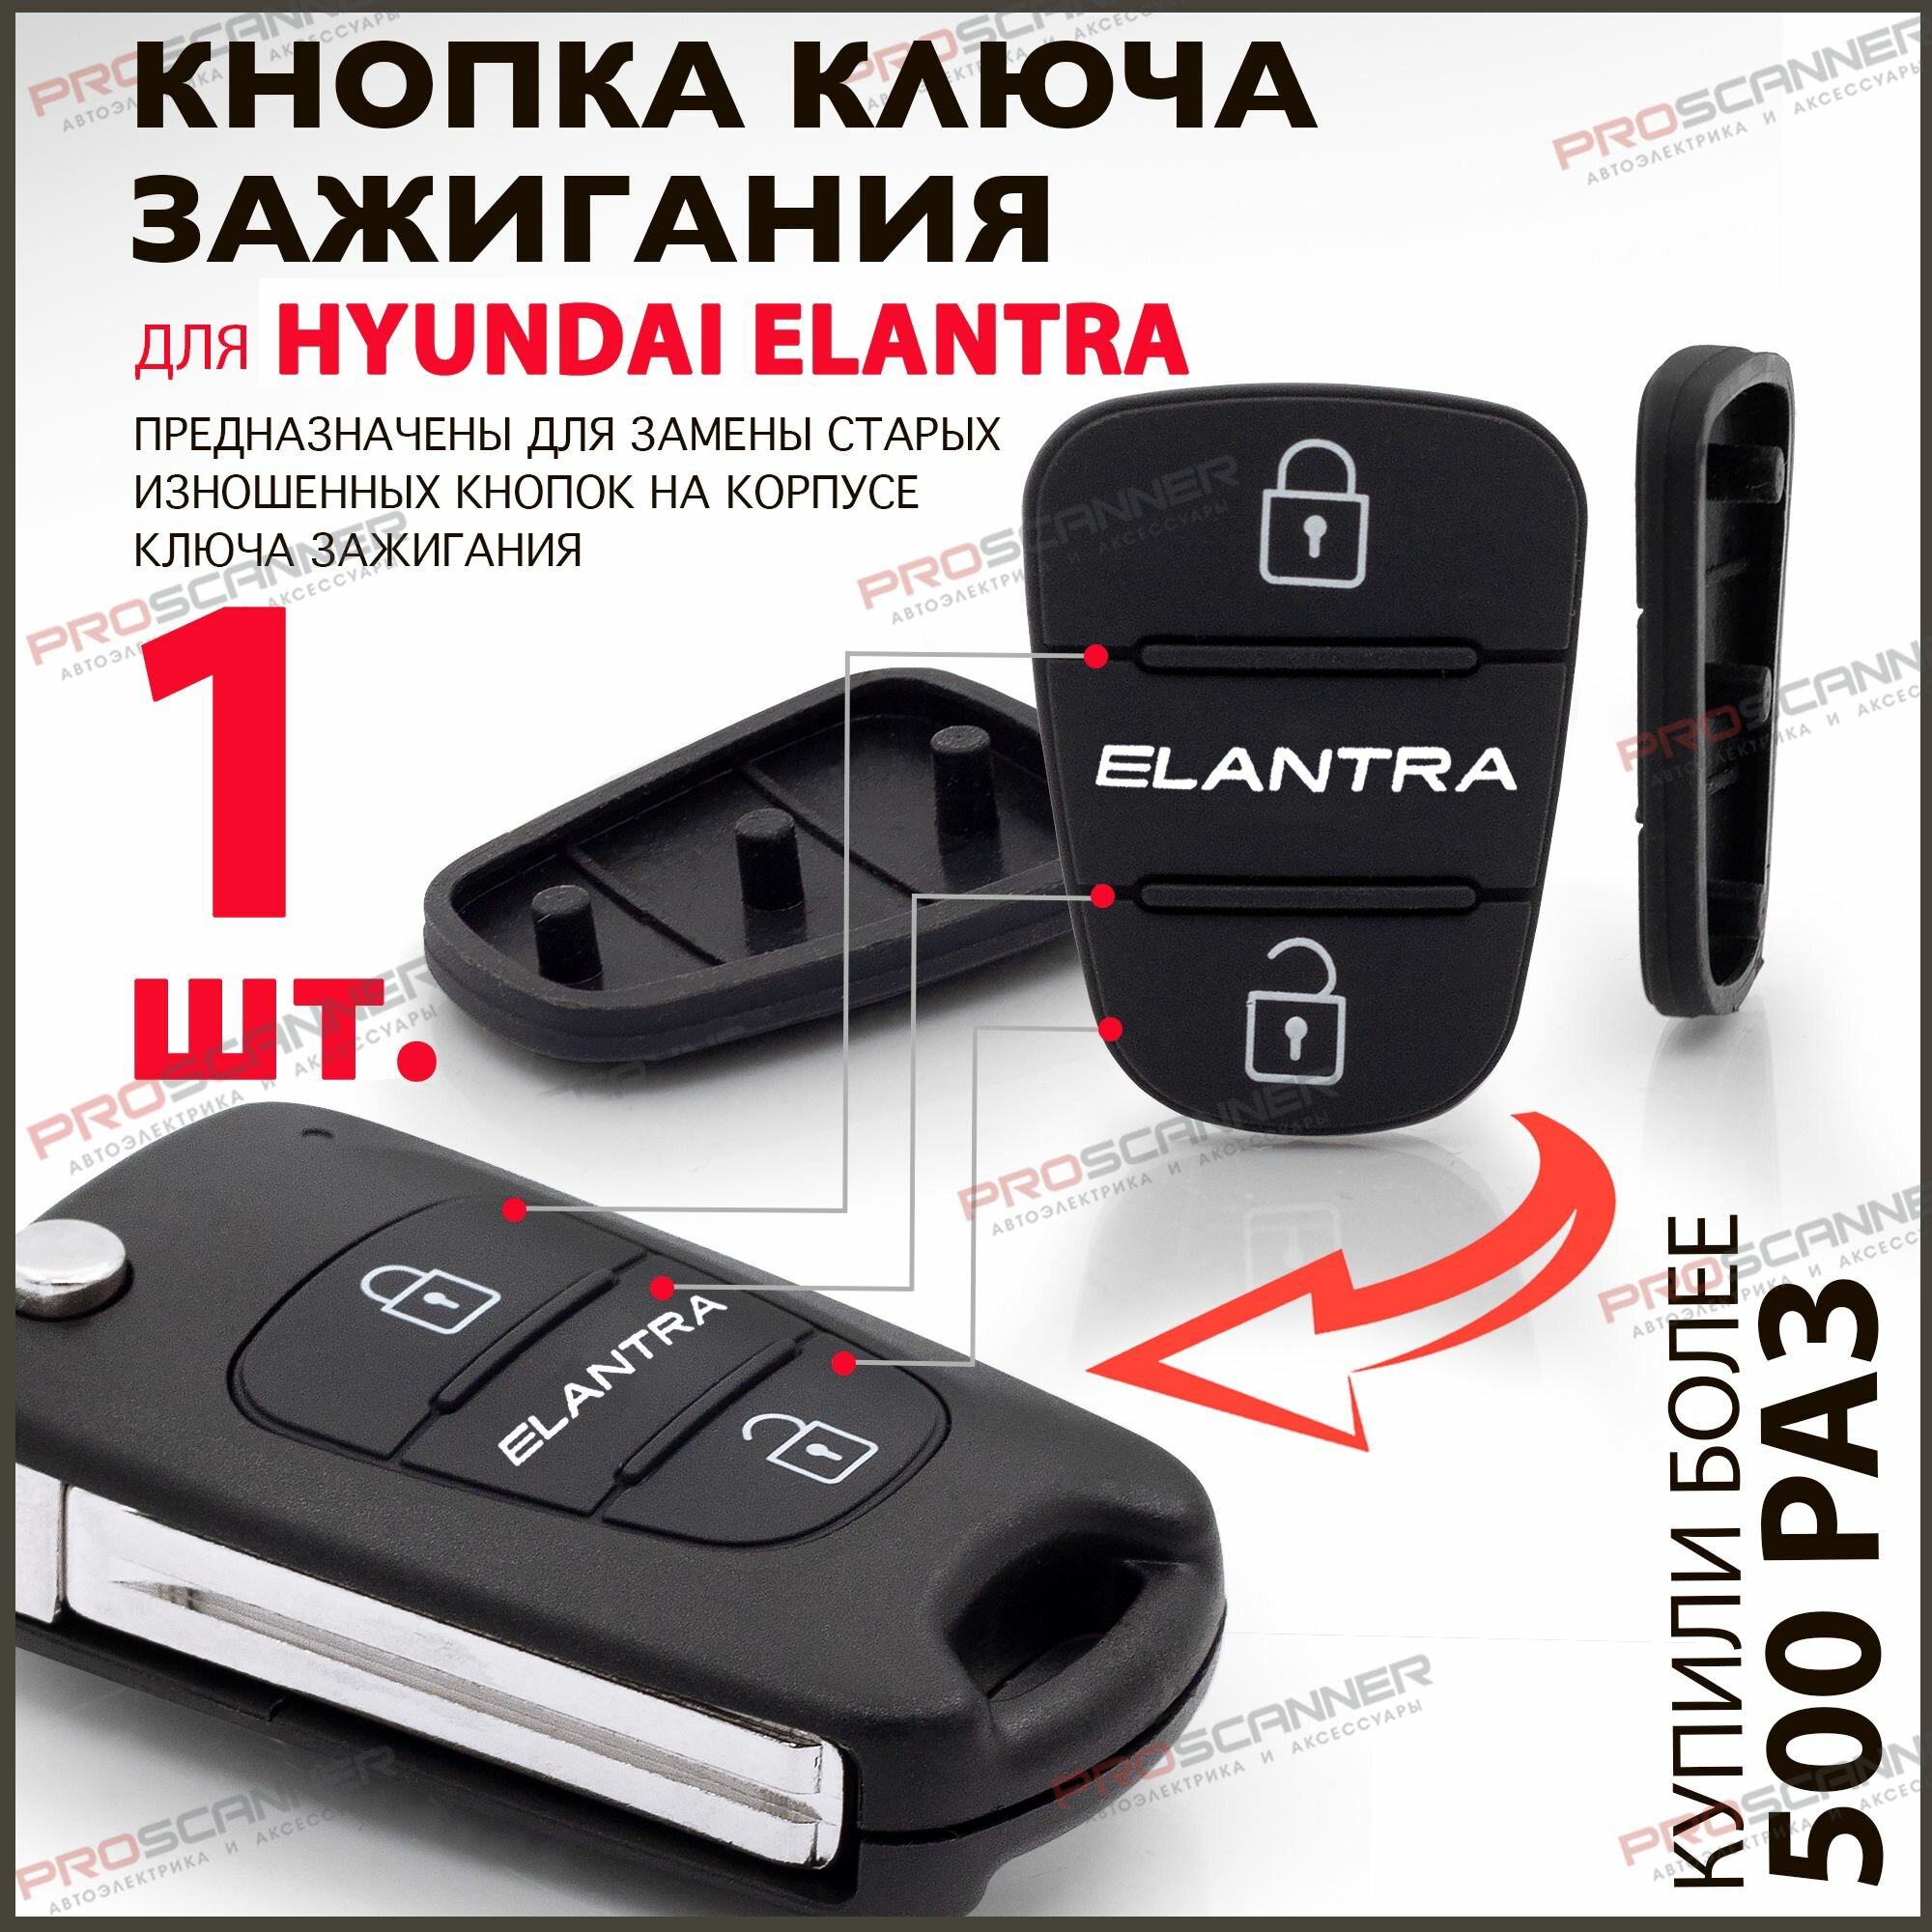 Кнопки для корпуса ключа зажигания Hyundai Elantra, 2-х кнопочные (1шт.)